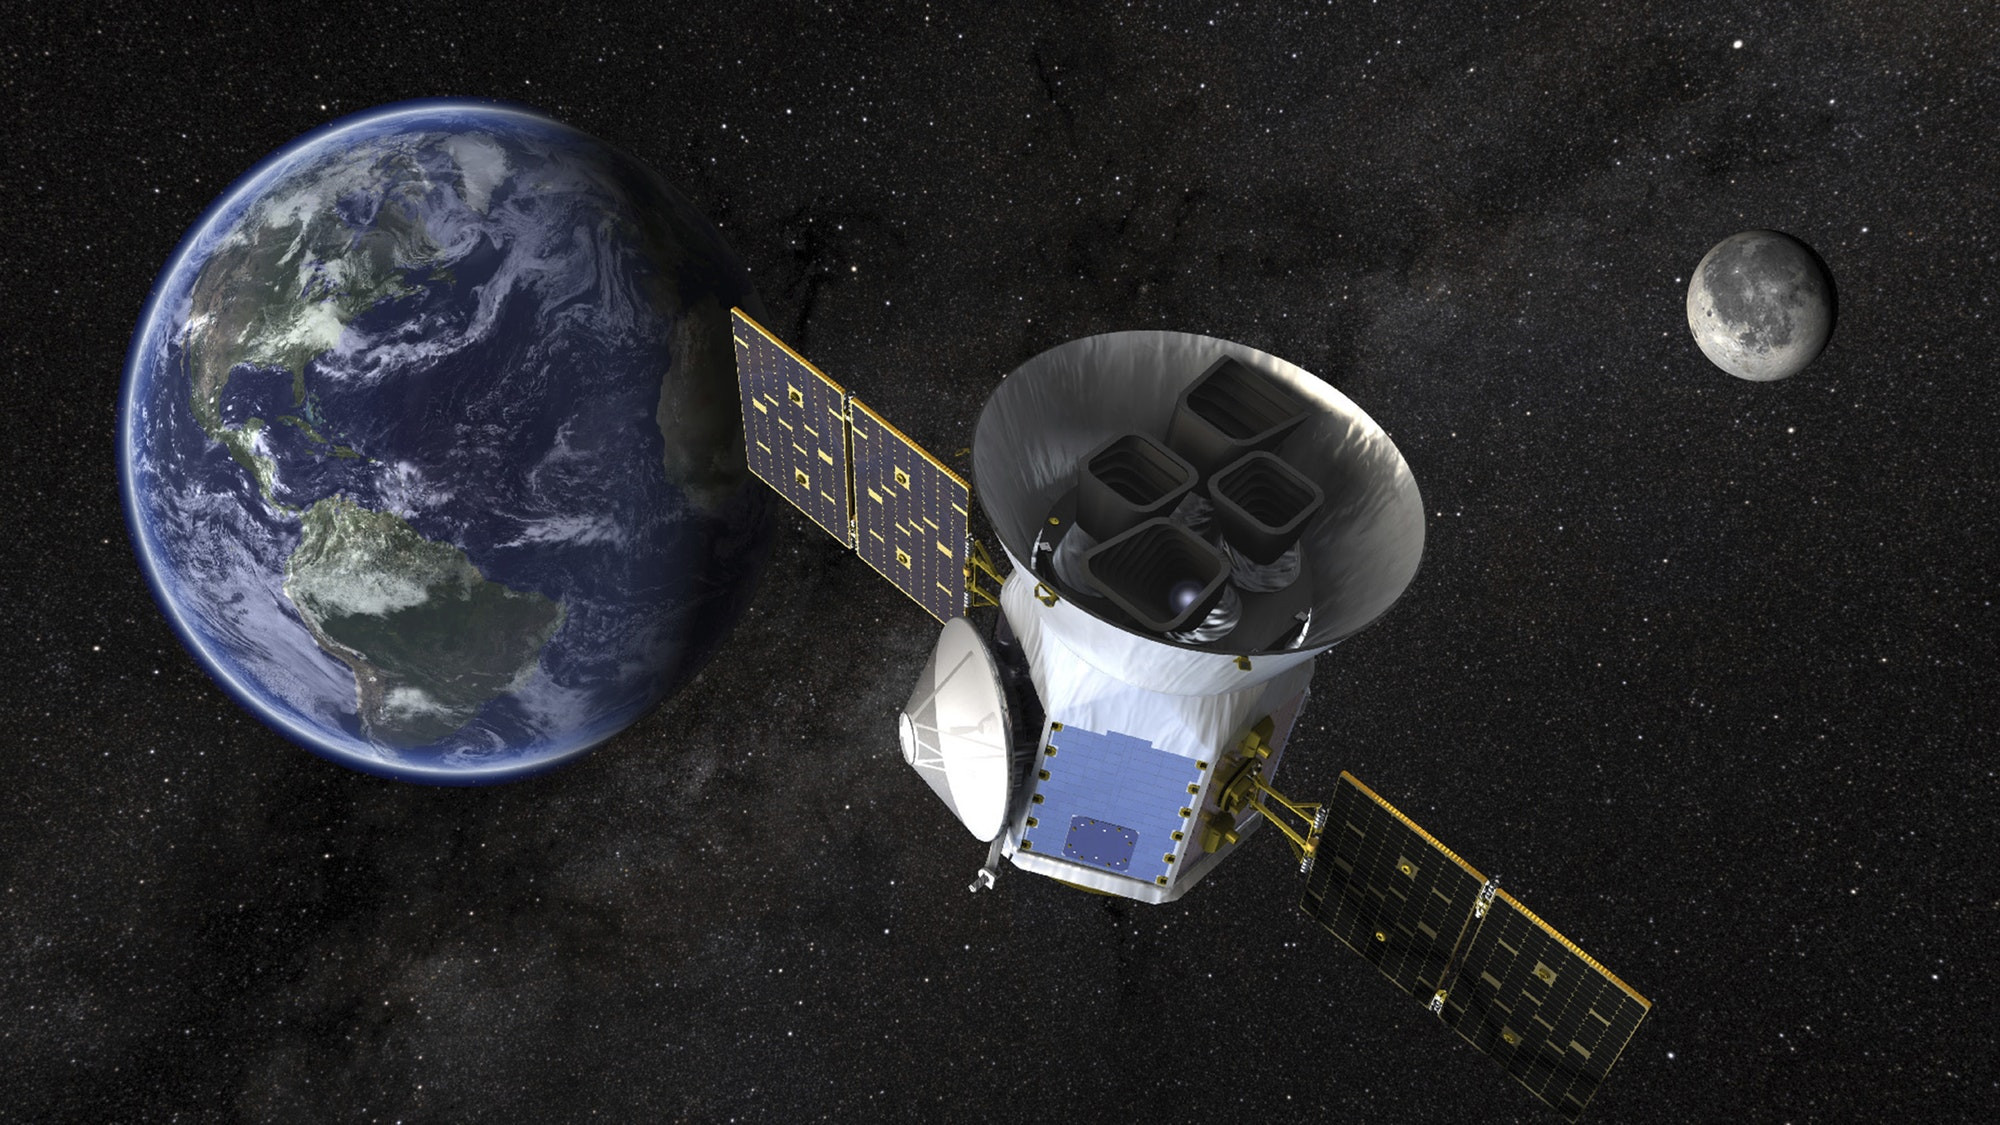 Ρωσία, Κίνα και ΕΕ σχεδιάζουν την δημιουργία διαστημικού σταθμού στην Σελήνη